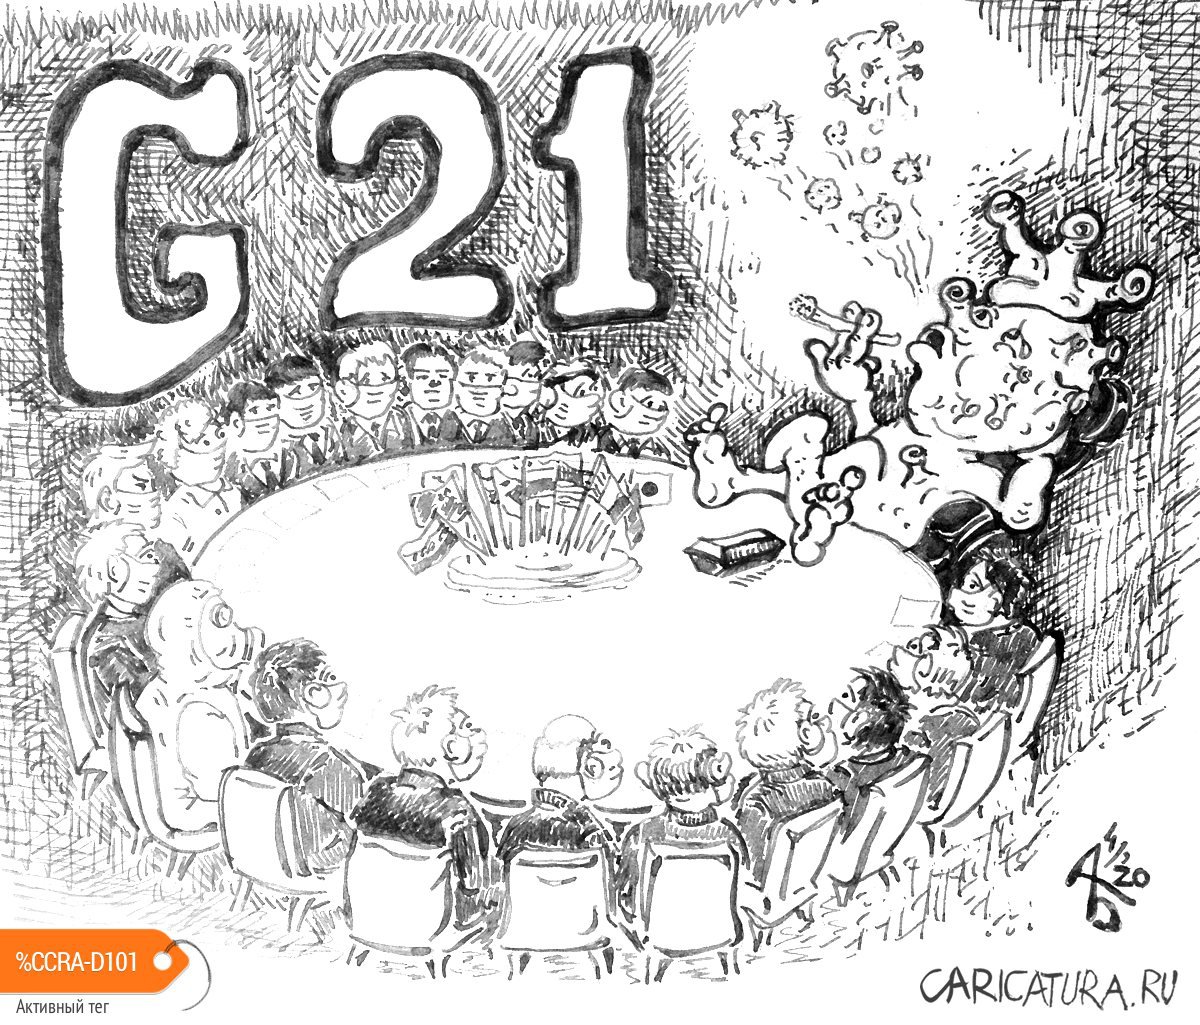 Карикатура "G21", Александр Богданов